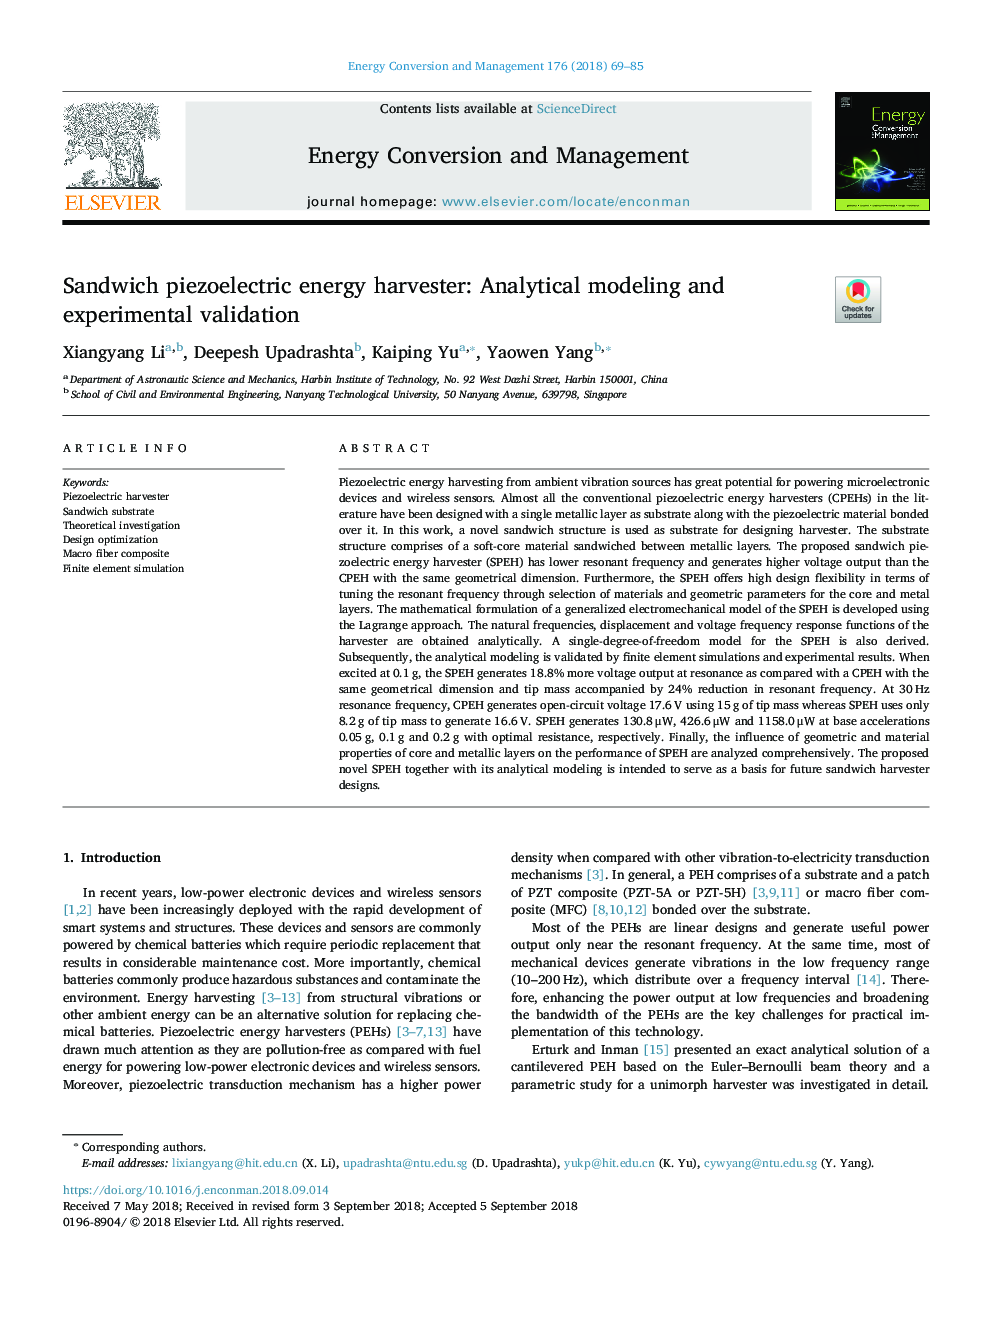 ارزیاب انرژی پیزوالکتریک ساندویچ: مدلسازی تحلیلی و اعتبار سنجی آزمایشی